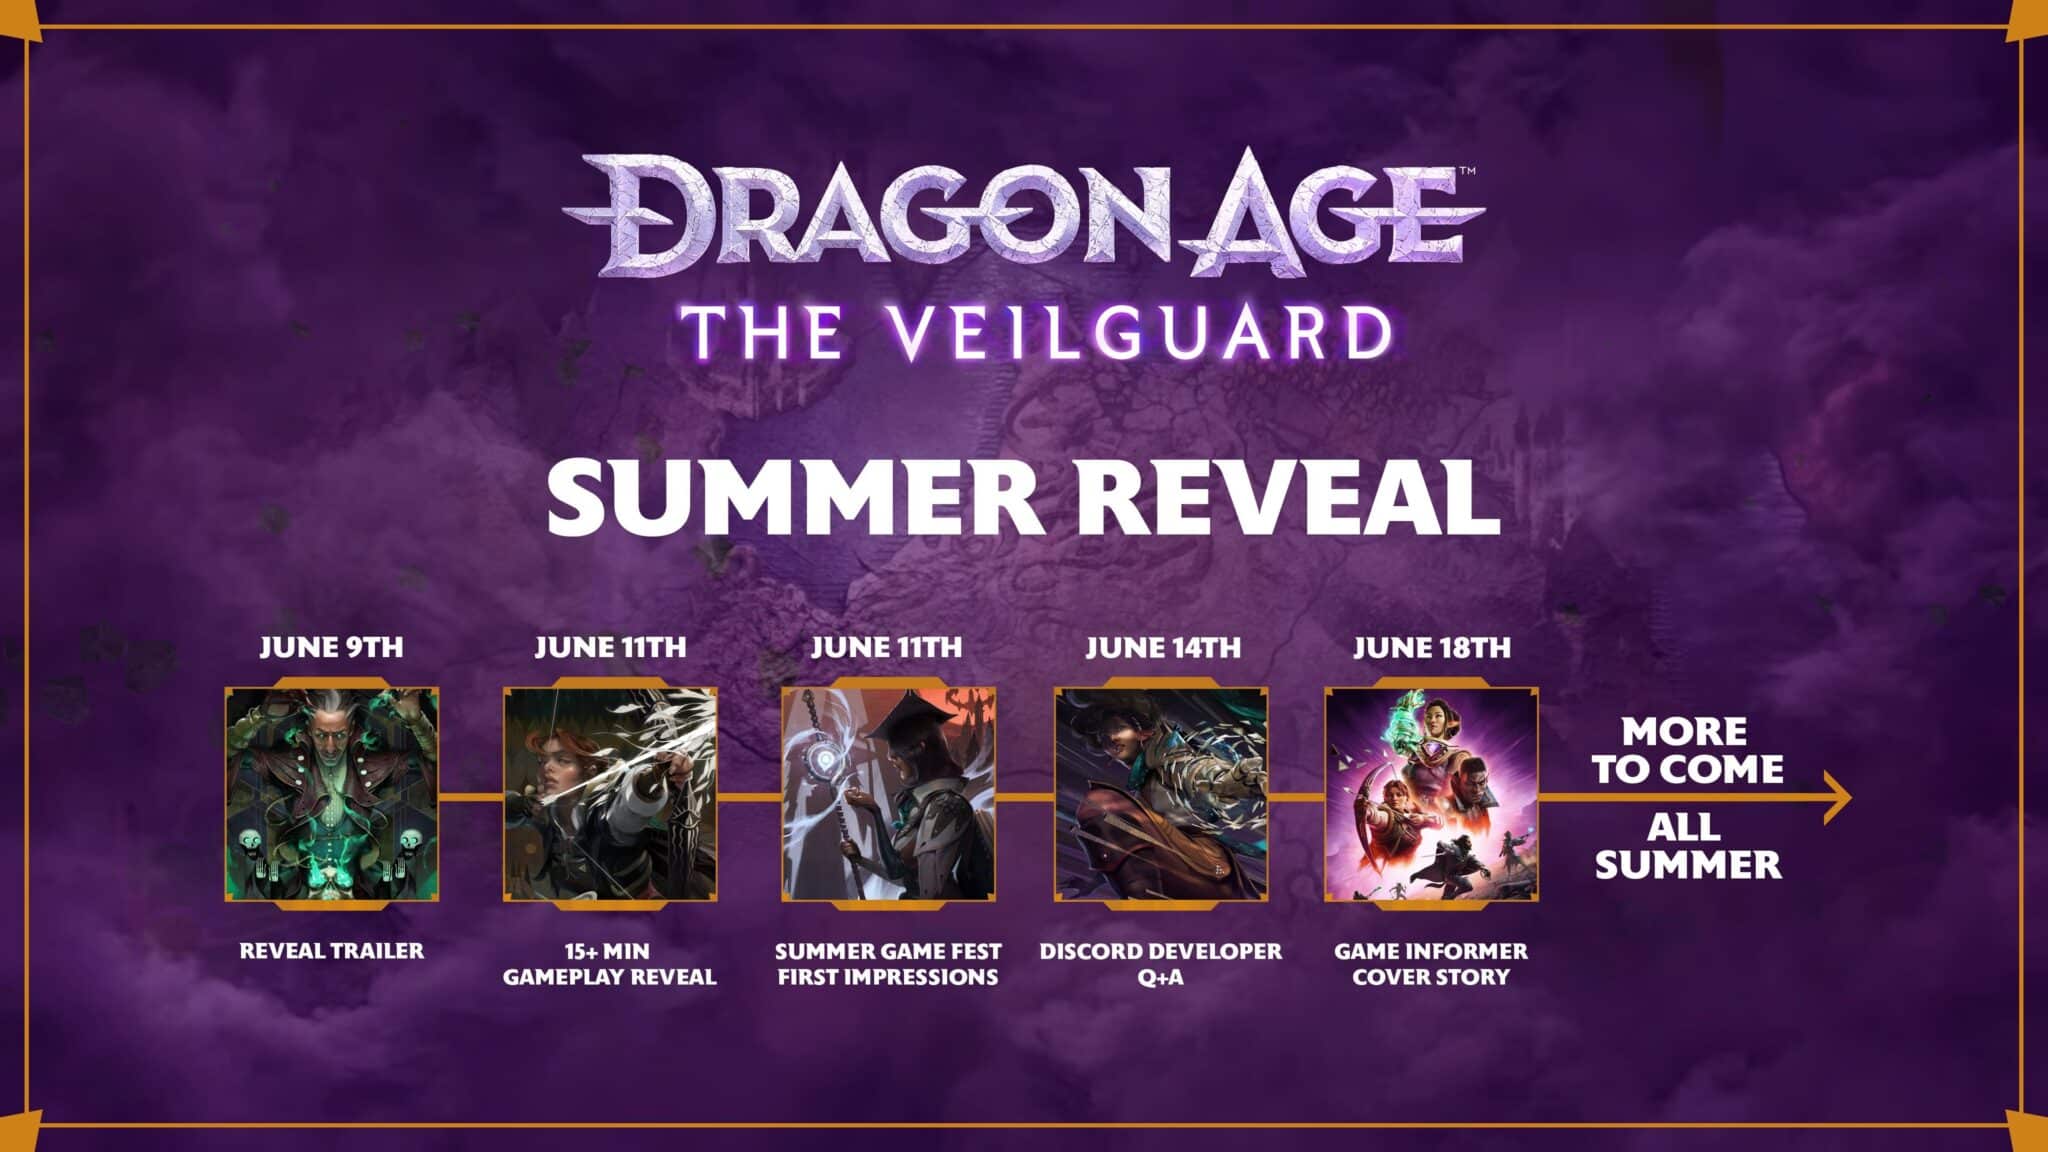 (Blijkbaar kun je de komende dagen veel nieuwe informatie over Dragon Age: The Veilguard tegemoet zien.)